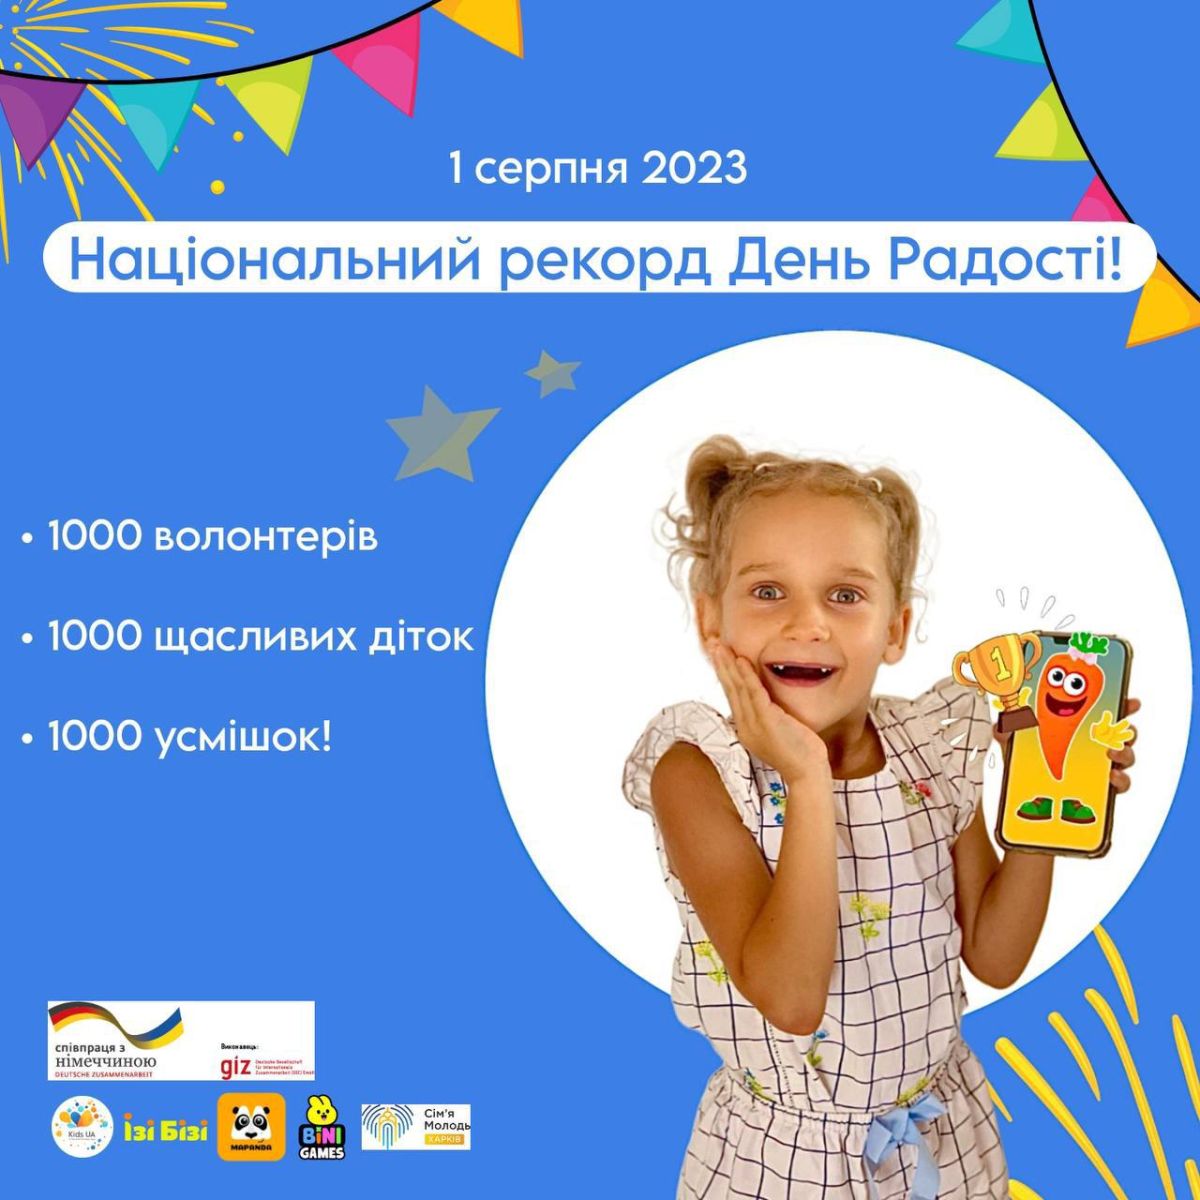 Встановлять національний рекорд харківські діти, беручи участь у проекті до Міжнародного дня радості